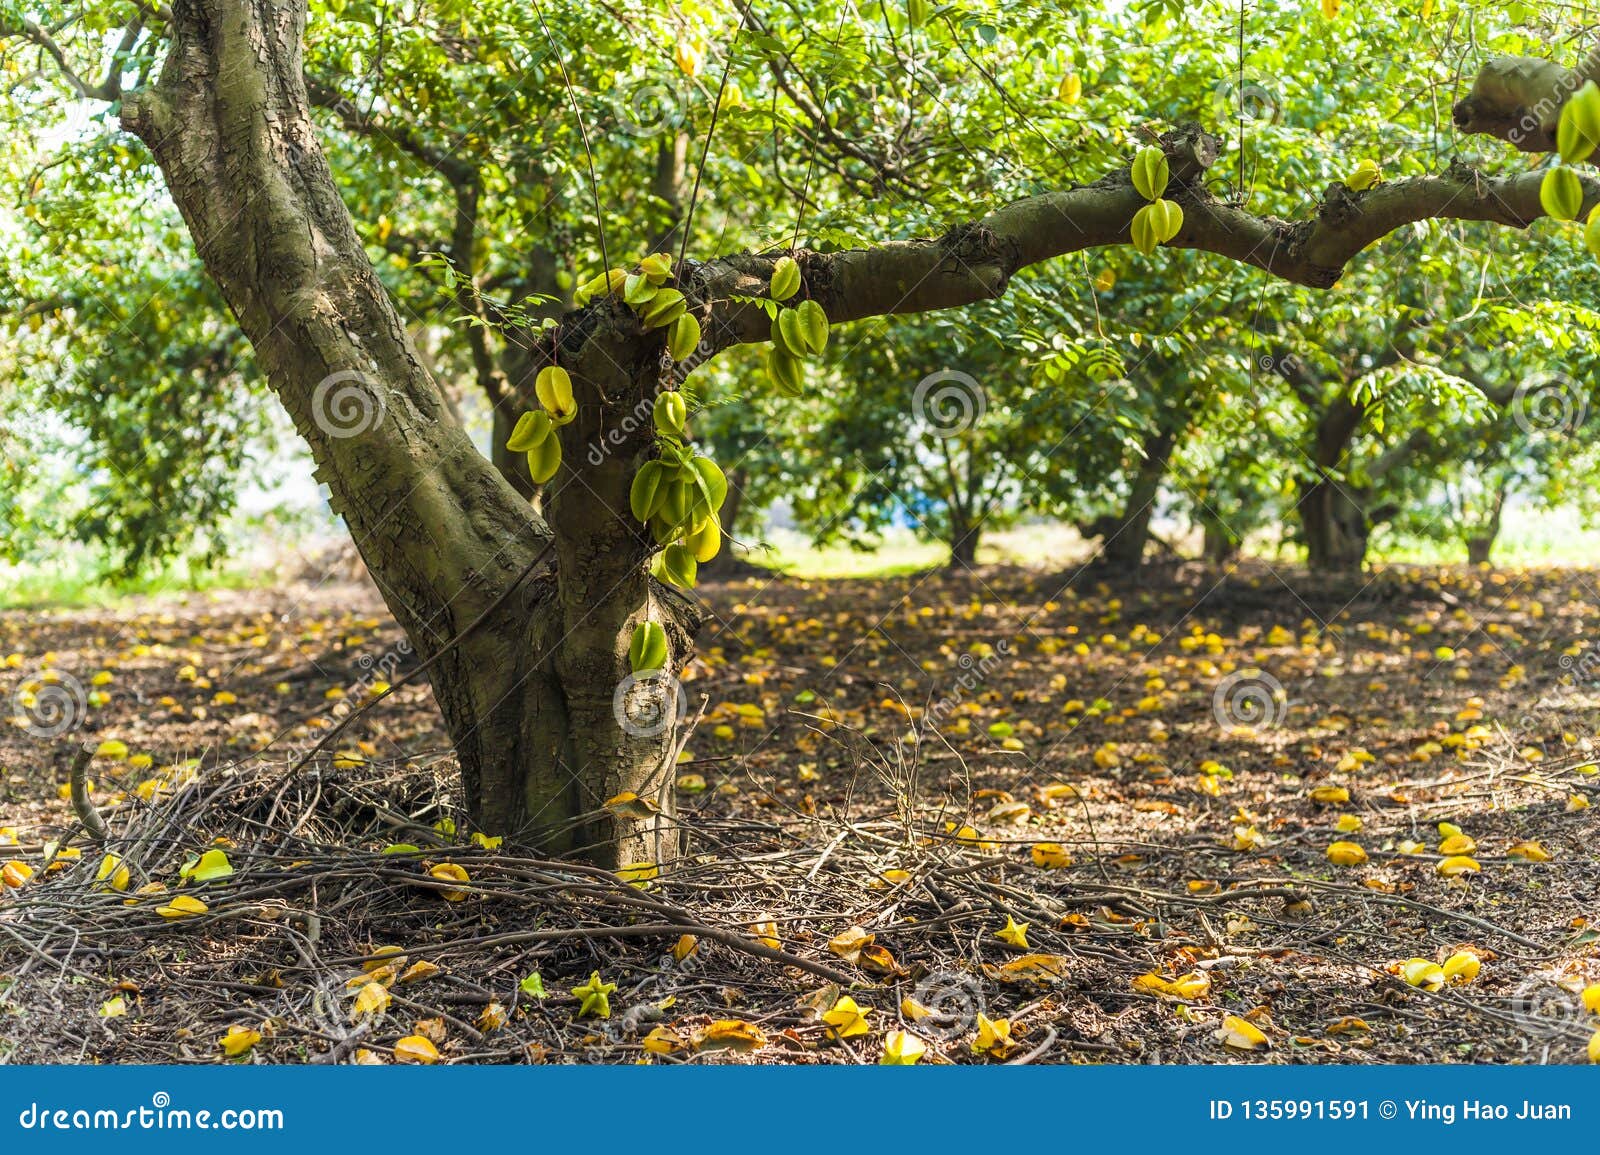 فاكهة Starfruit تنمو على جذع الشجرة